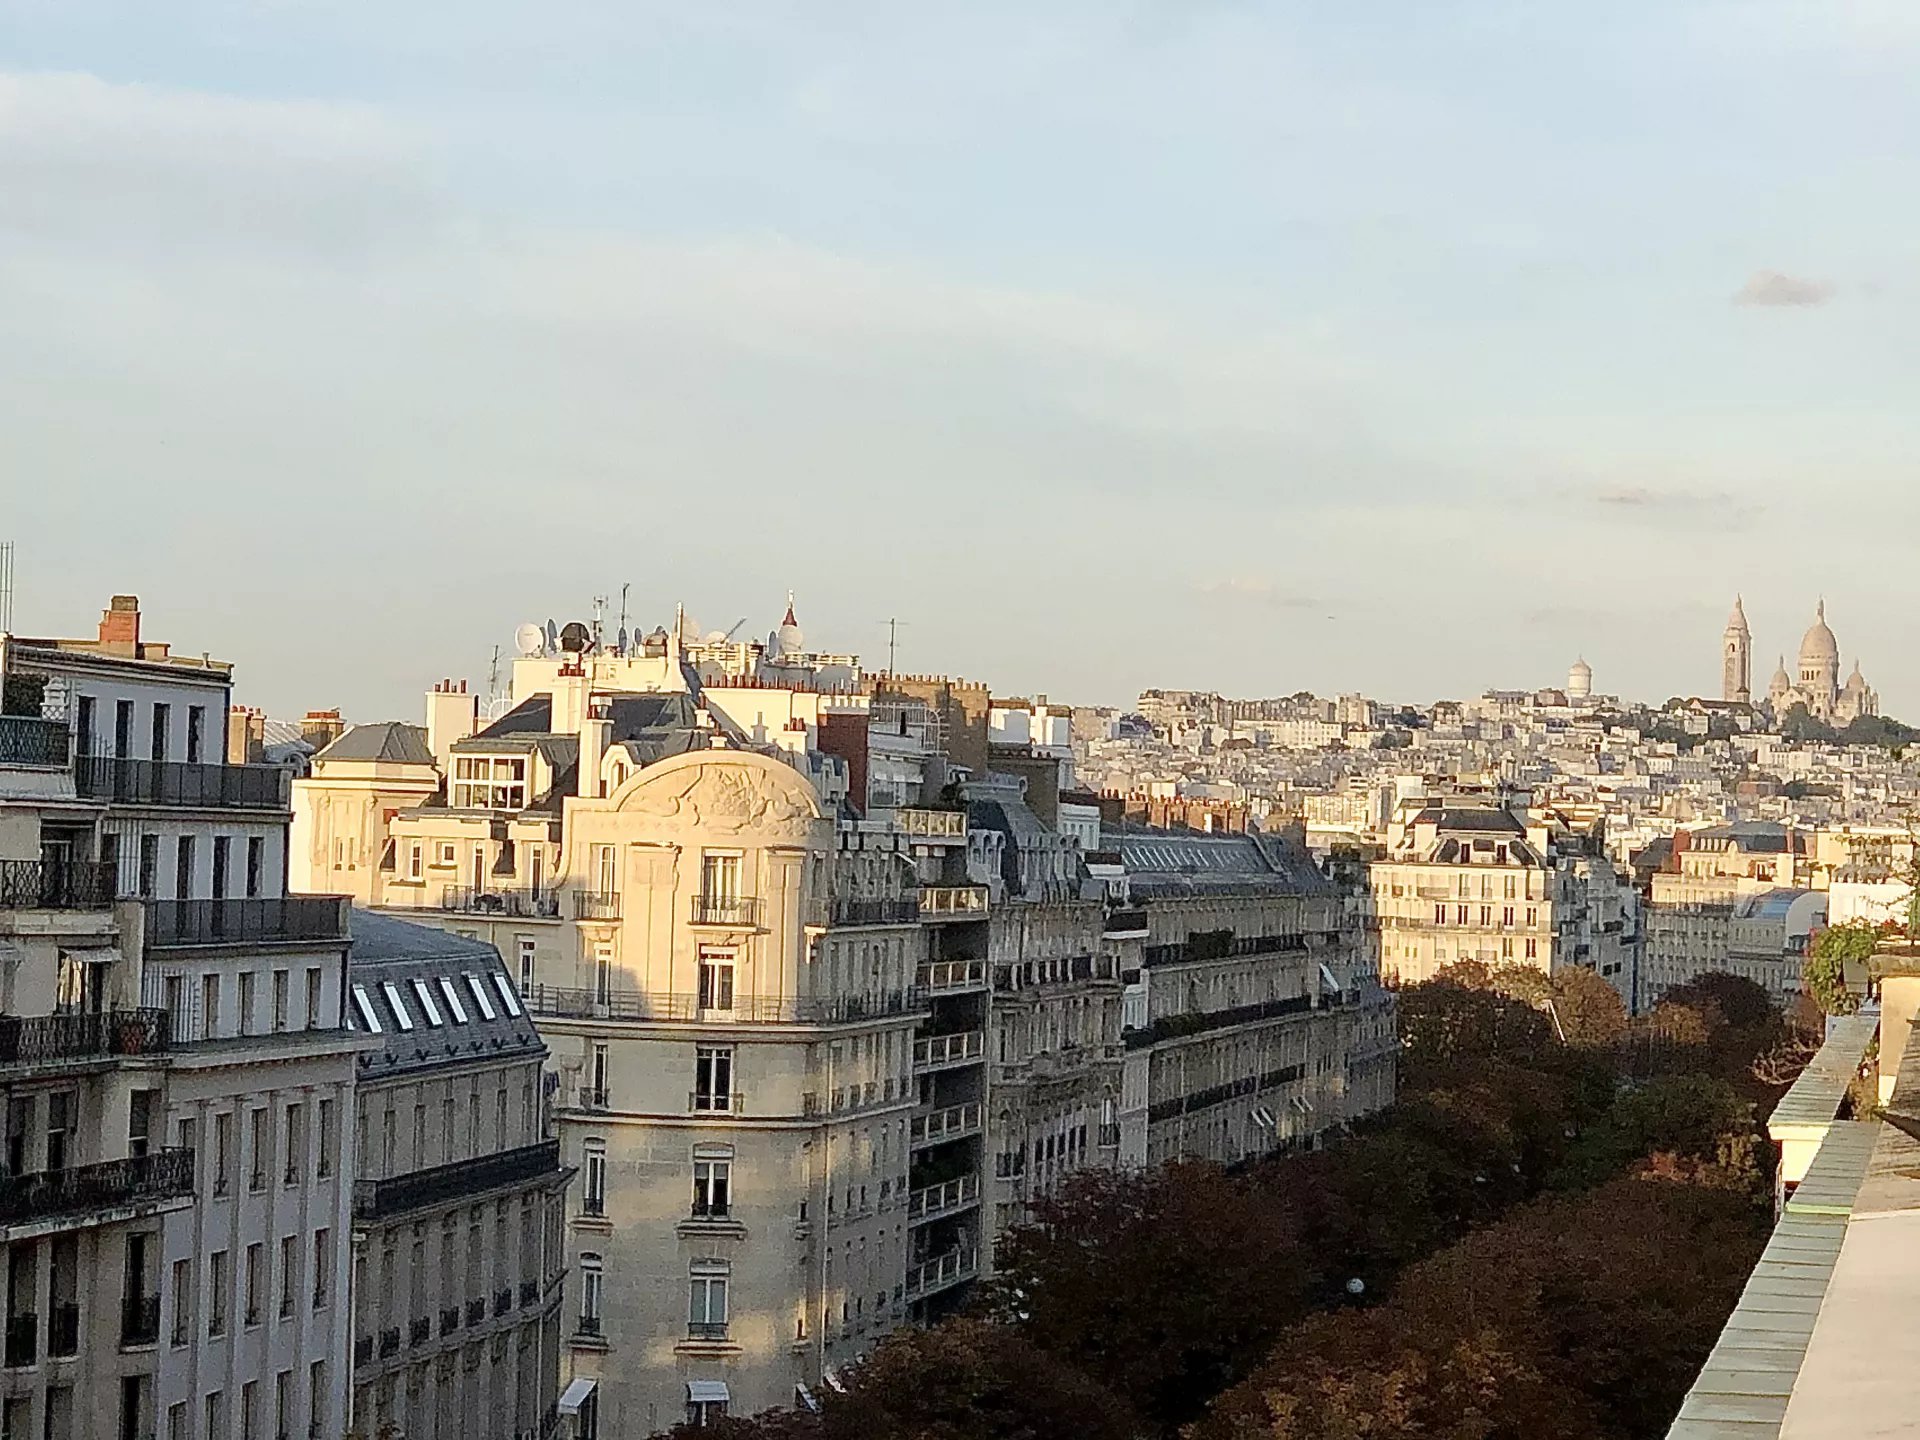 Sale Apartment - Paris 8th (Paris 8ème) Champs-Élysées